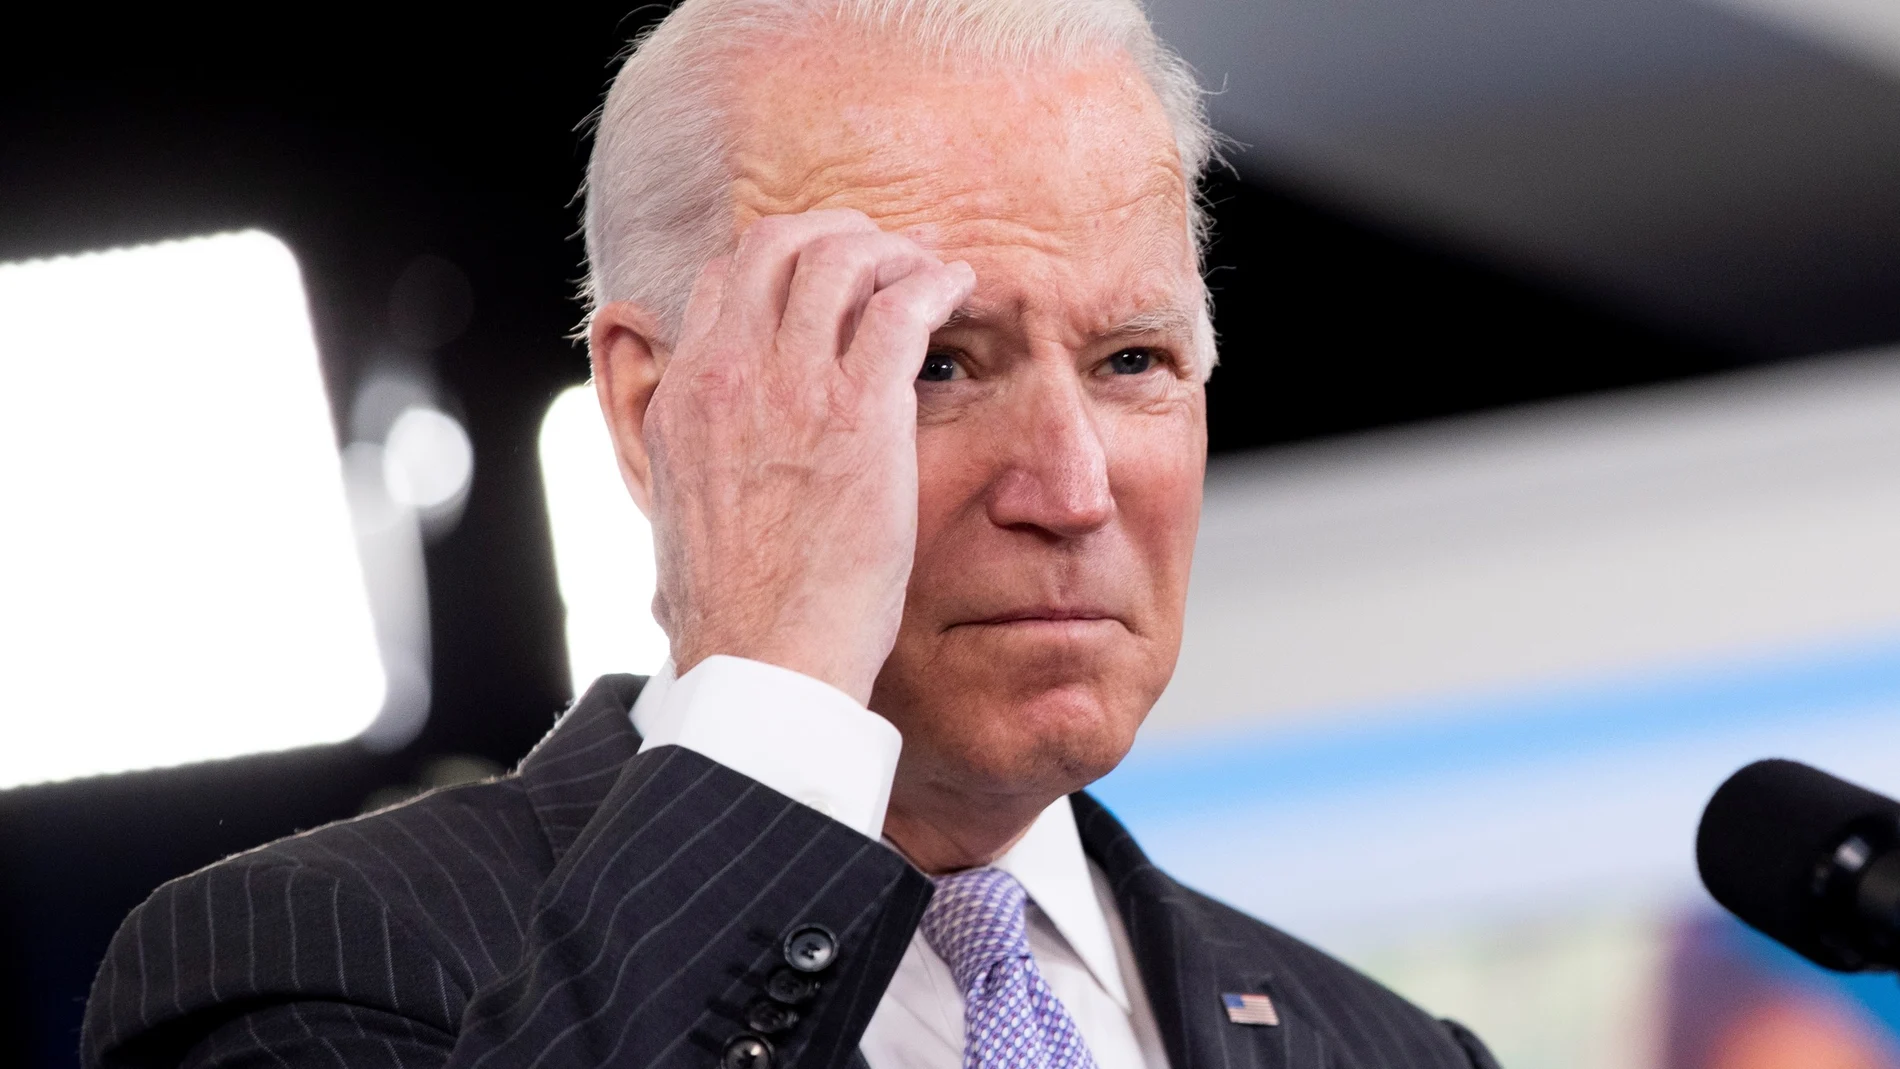 La decisión judicial supone un varapalo para la estrategia anticovid de Joe Biden